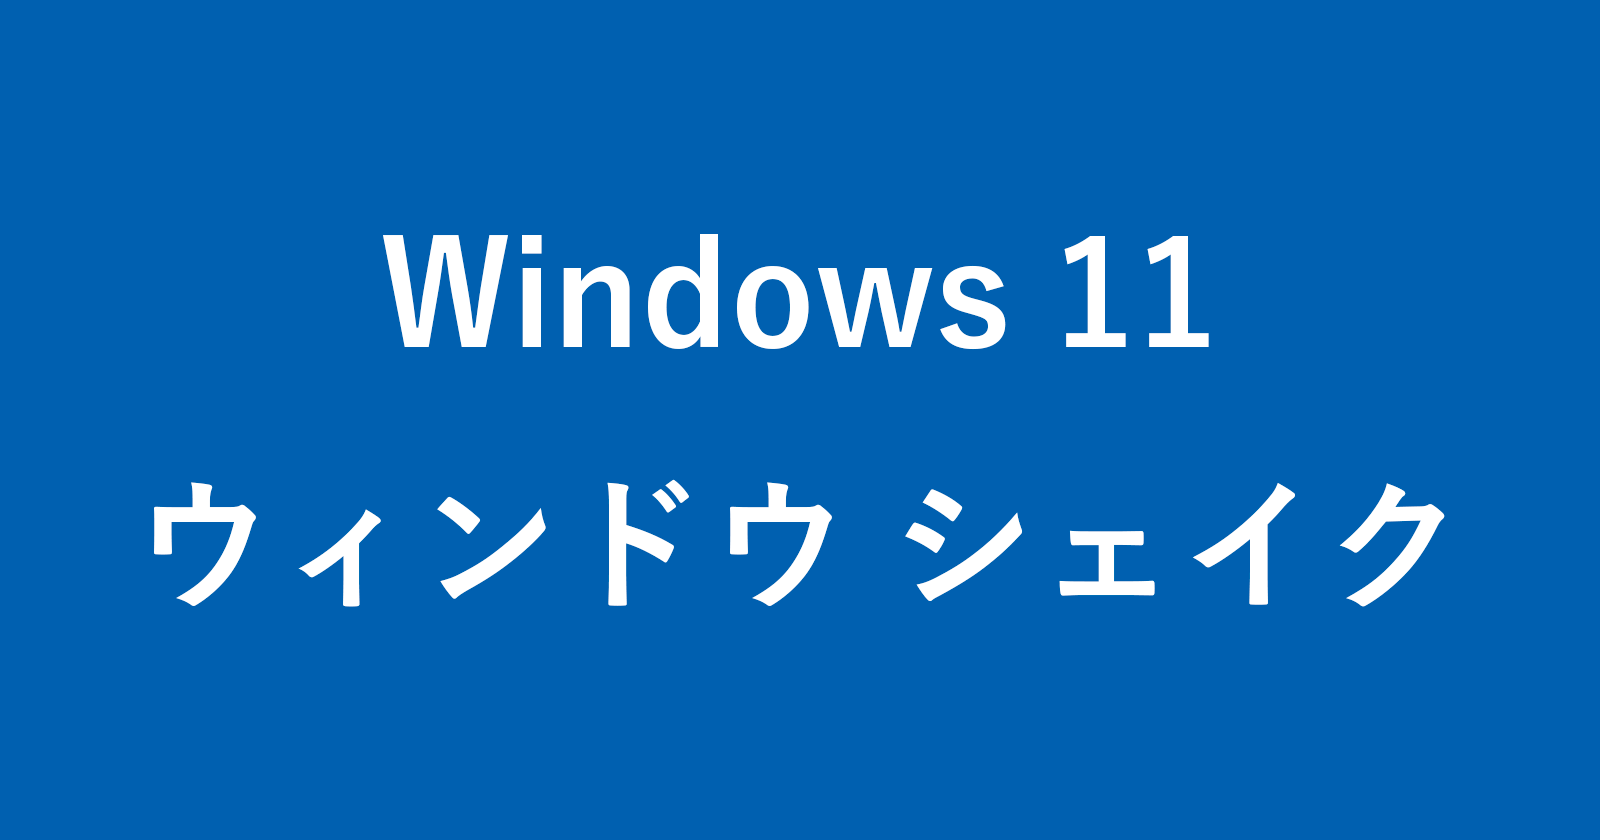 windows 11 title bar shake